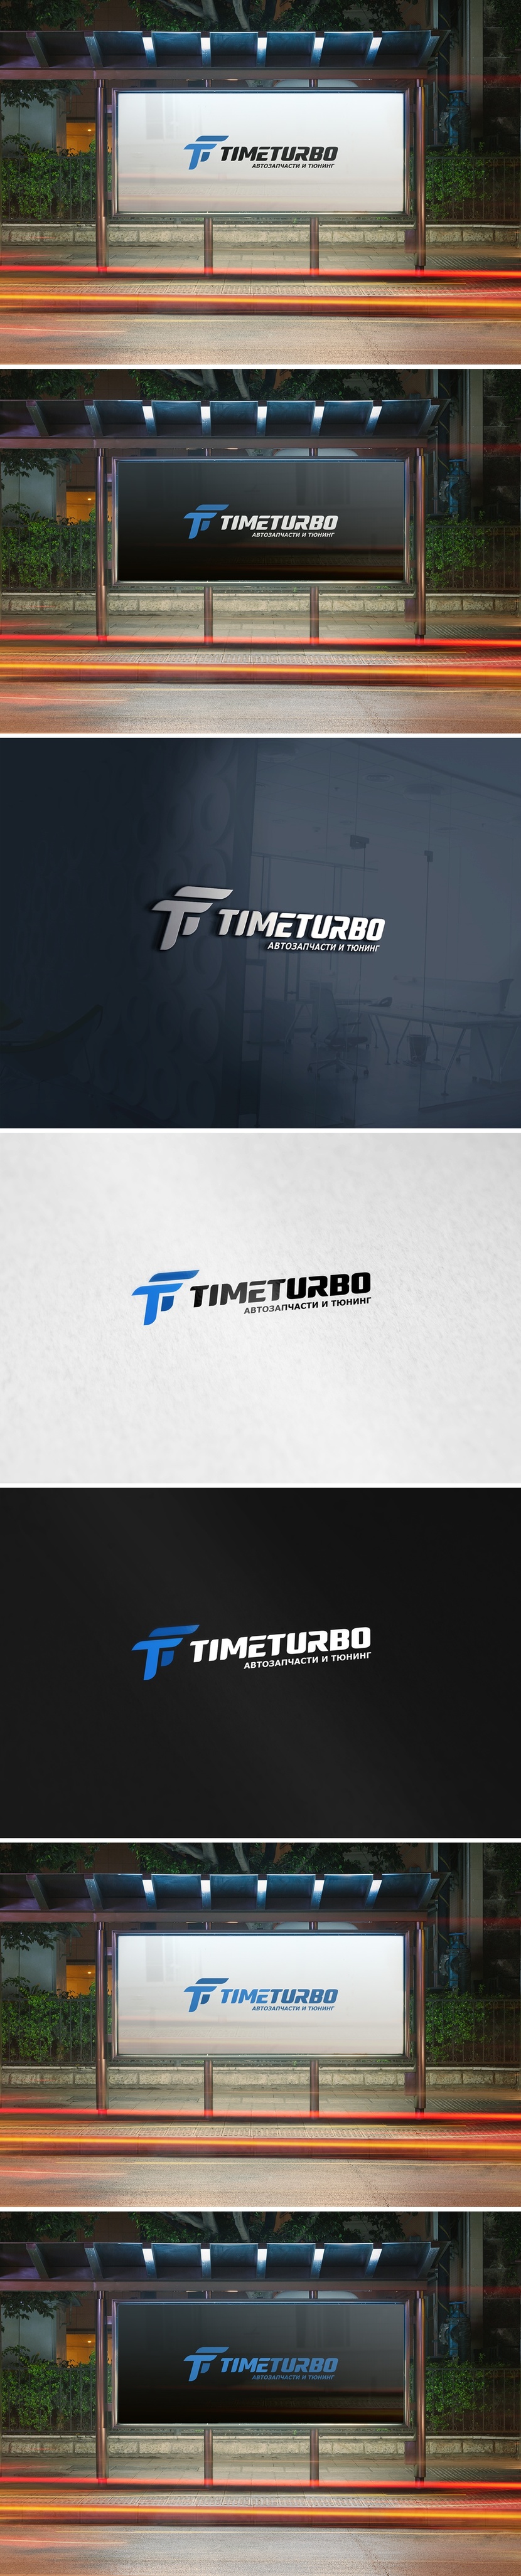 Фирменный знак представляет собой две динамичные стилизованные буквы "Т" TimeTurbo - Редизайн логотипа и фирменного стиля интернет-магазина автомобильных запчастей